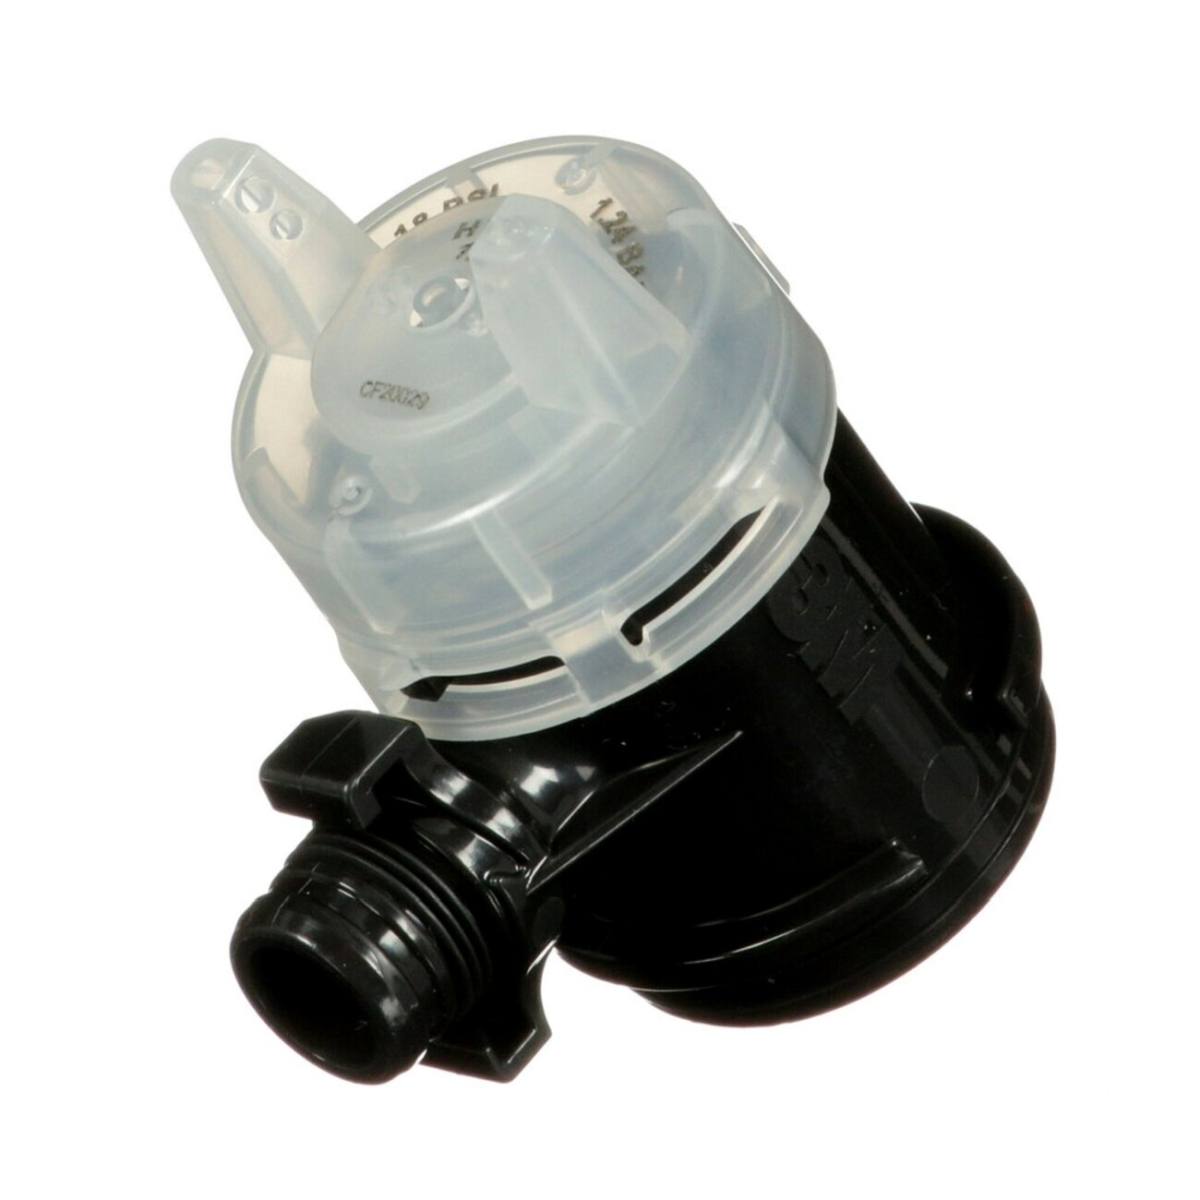 3M Testa dell'ugello ad alte prestazioni per tazze a pressione Kit di ricarica della testa di nebulizzazione HVLP a pressione 26818, trasparente, 1,8 (confezione=5pz)